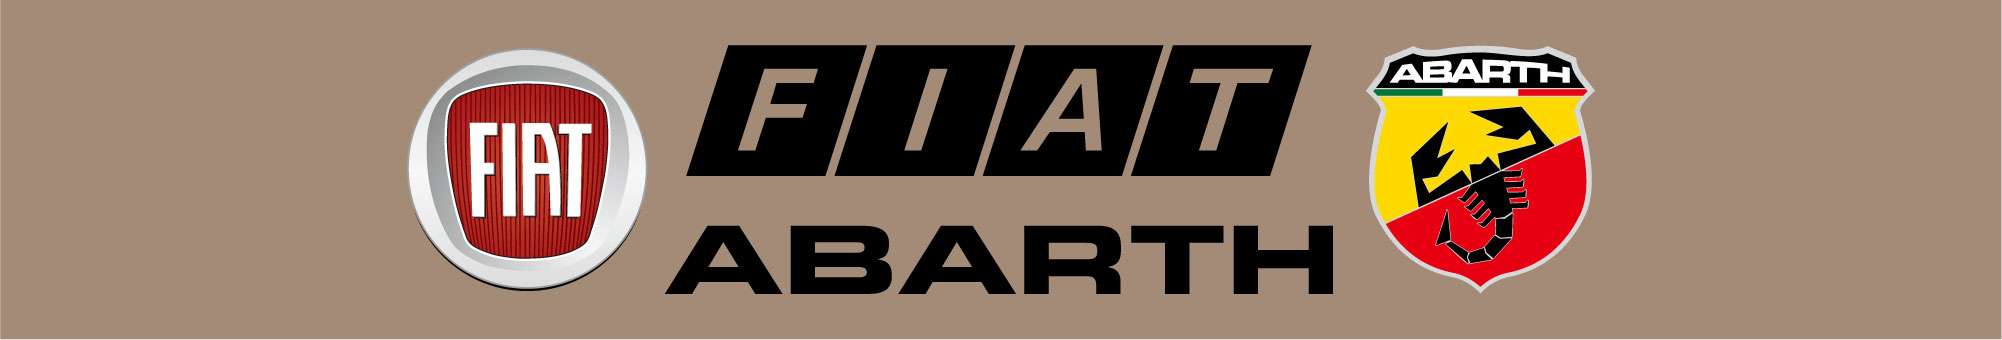 フィアット・アバルト車ブレーキ適合表